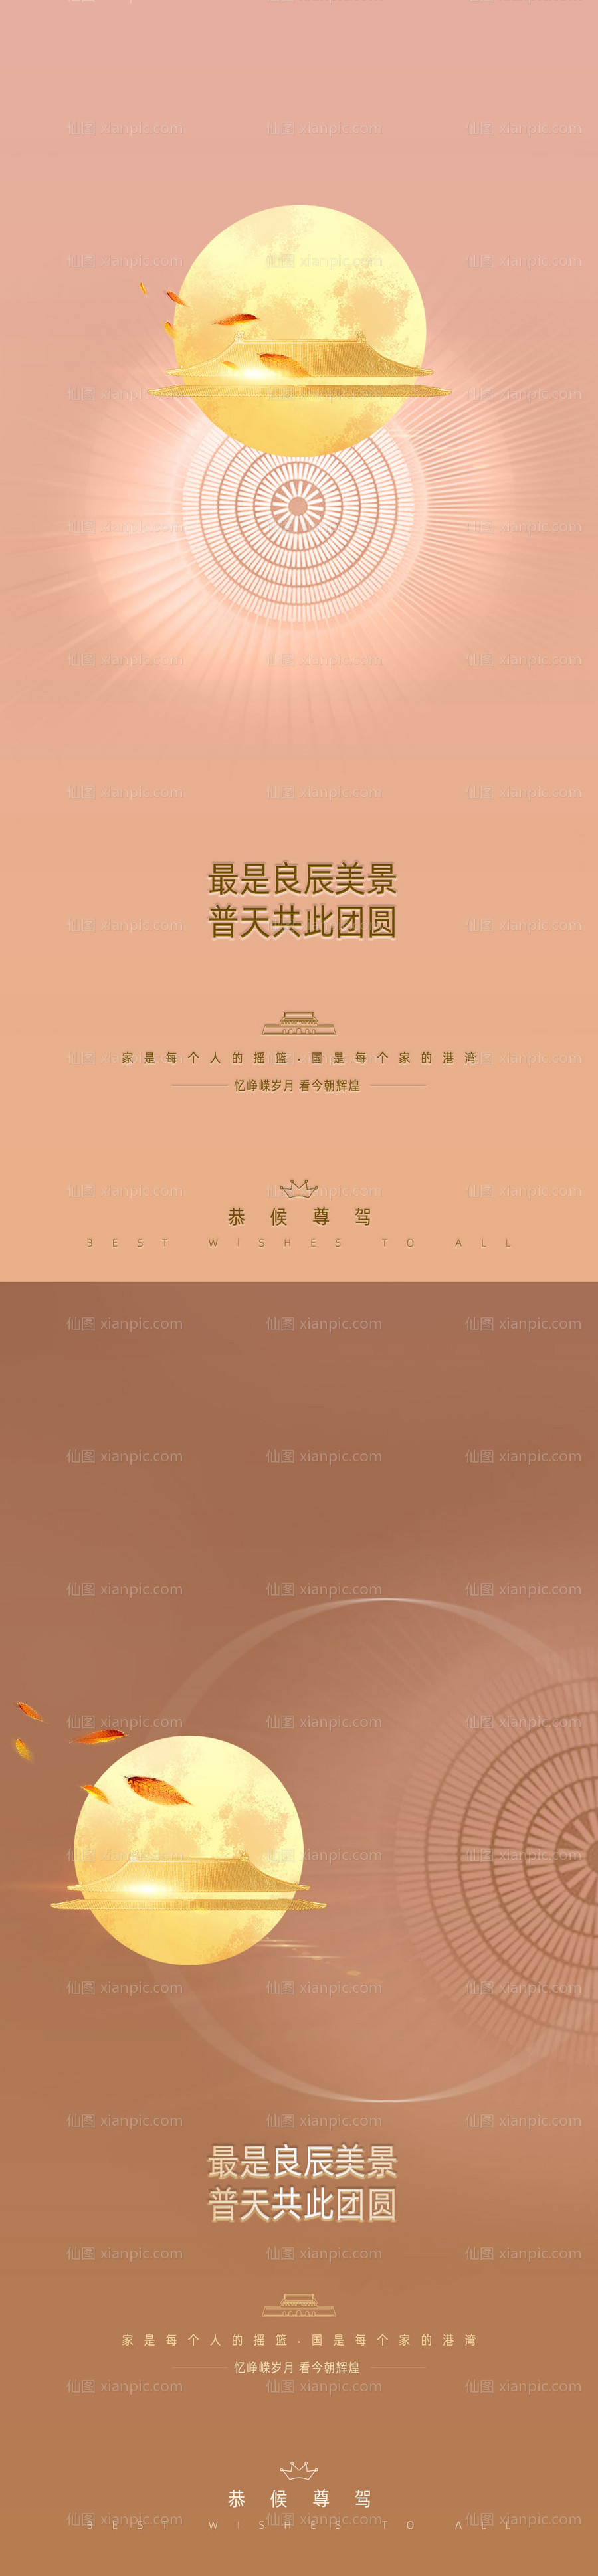 素材乐-中秋节国庆节系列海报